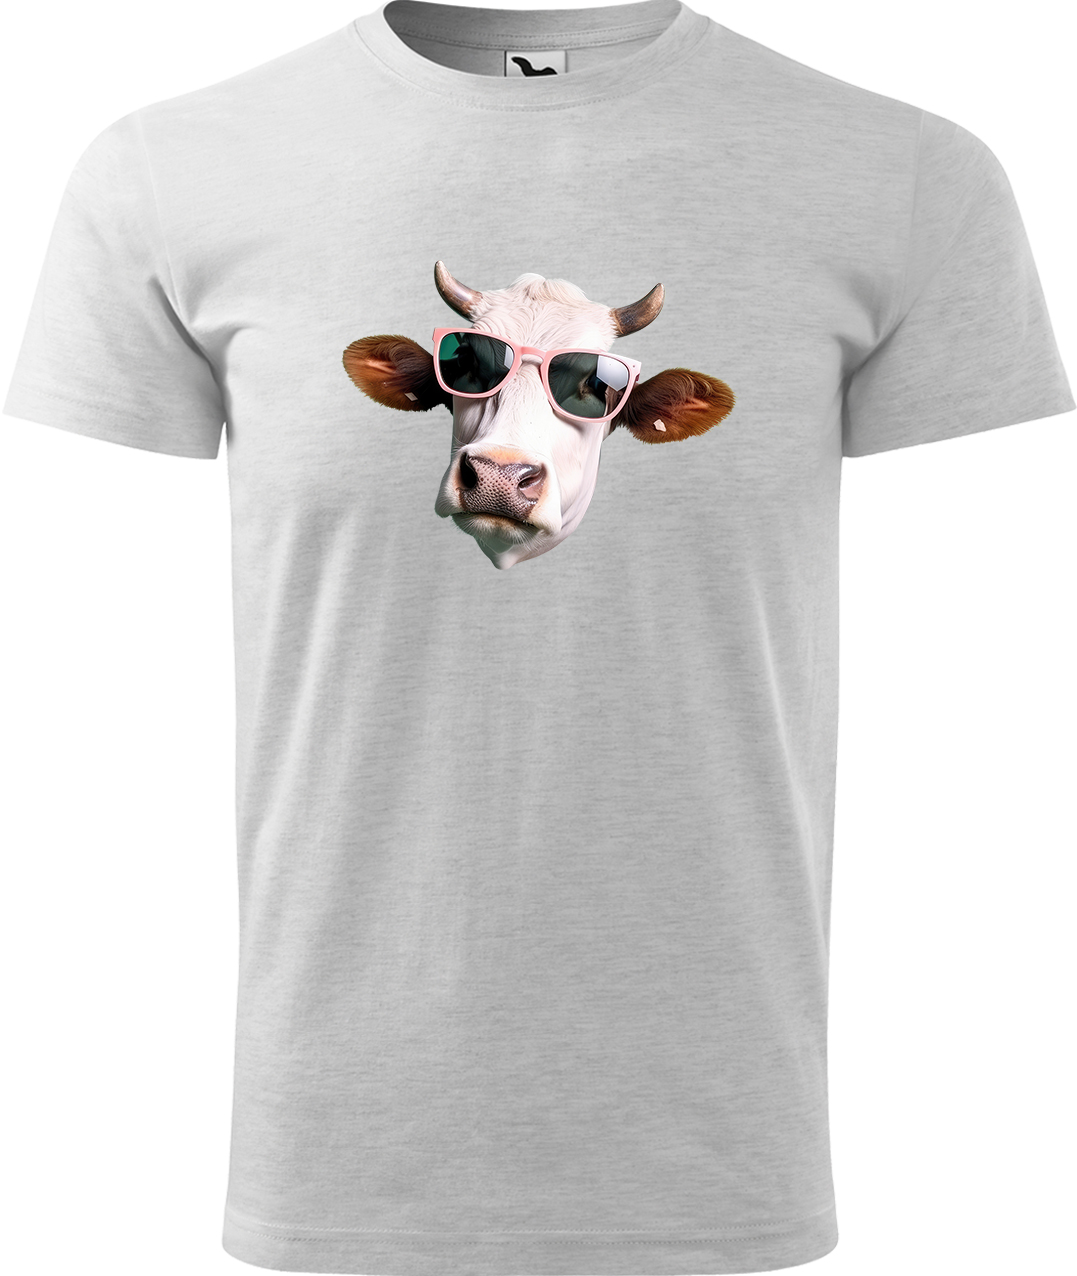 Pánské tričko s krávou - Kráva v brýlích Velikost: S, Barva: Světle šedý melír (03), Střih: pánský